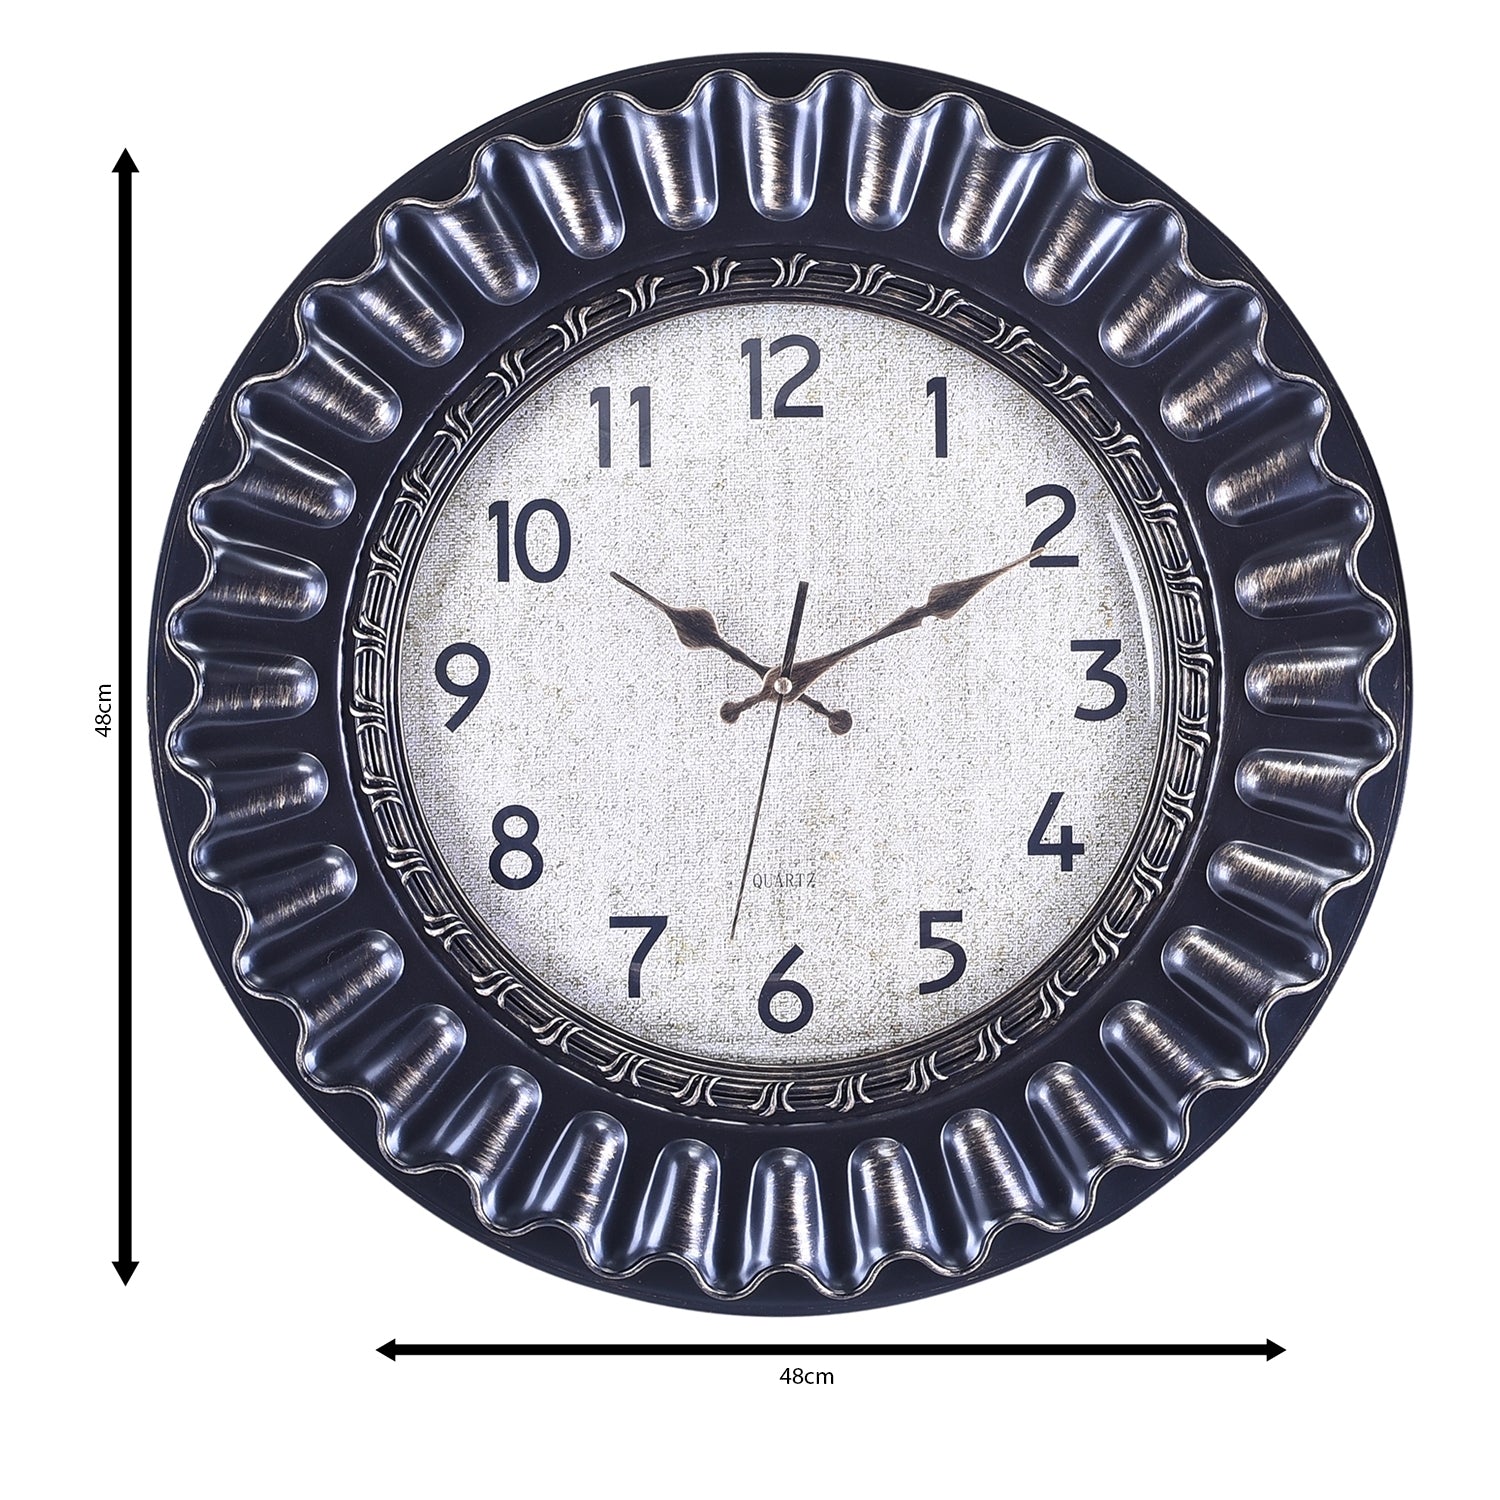 Premium Antique Design Analog Wall Clock 41